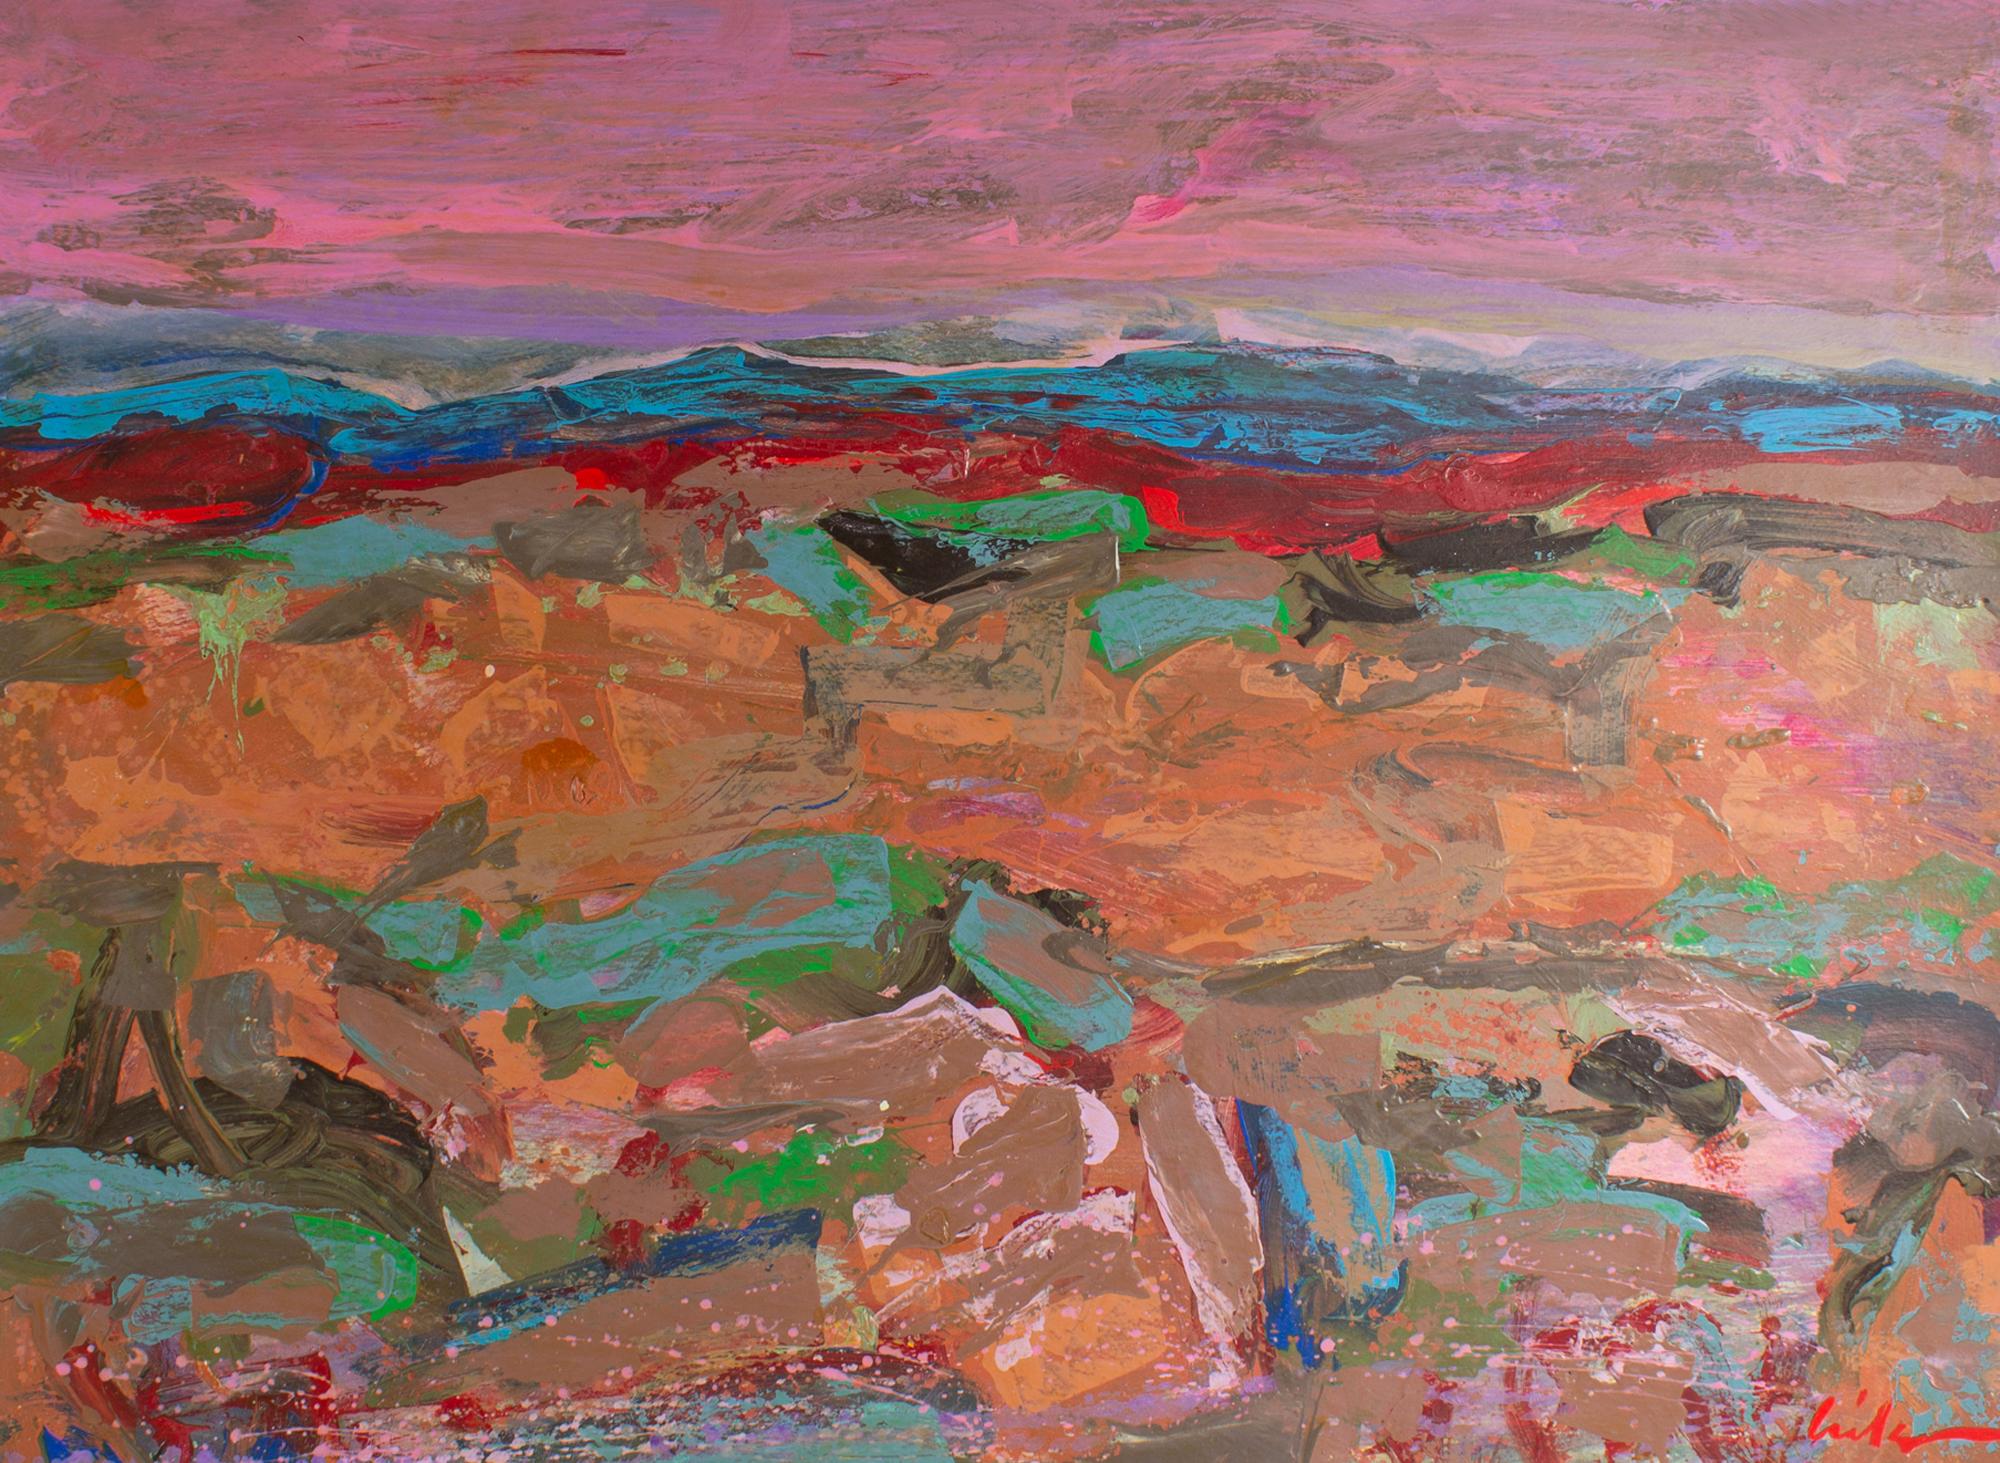 Ein Gemälde des amerikanischen Künstlers Harry Hilson (1935-2004) aus den 1980er Jahren, Acryl auf Papier. Dieses abstrakte Werk zeigt eine lebendige Landschaft, die sich aus frenetischen Pinselstrichen zusammensetzt, die eine hügelige Landschaft